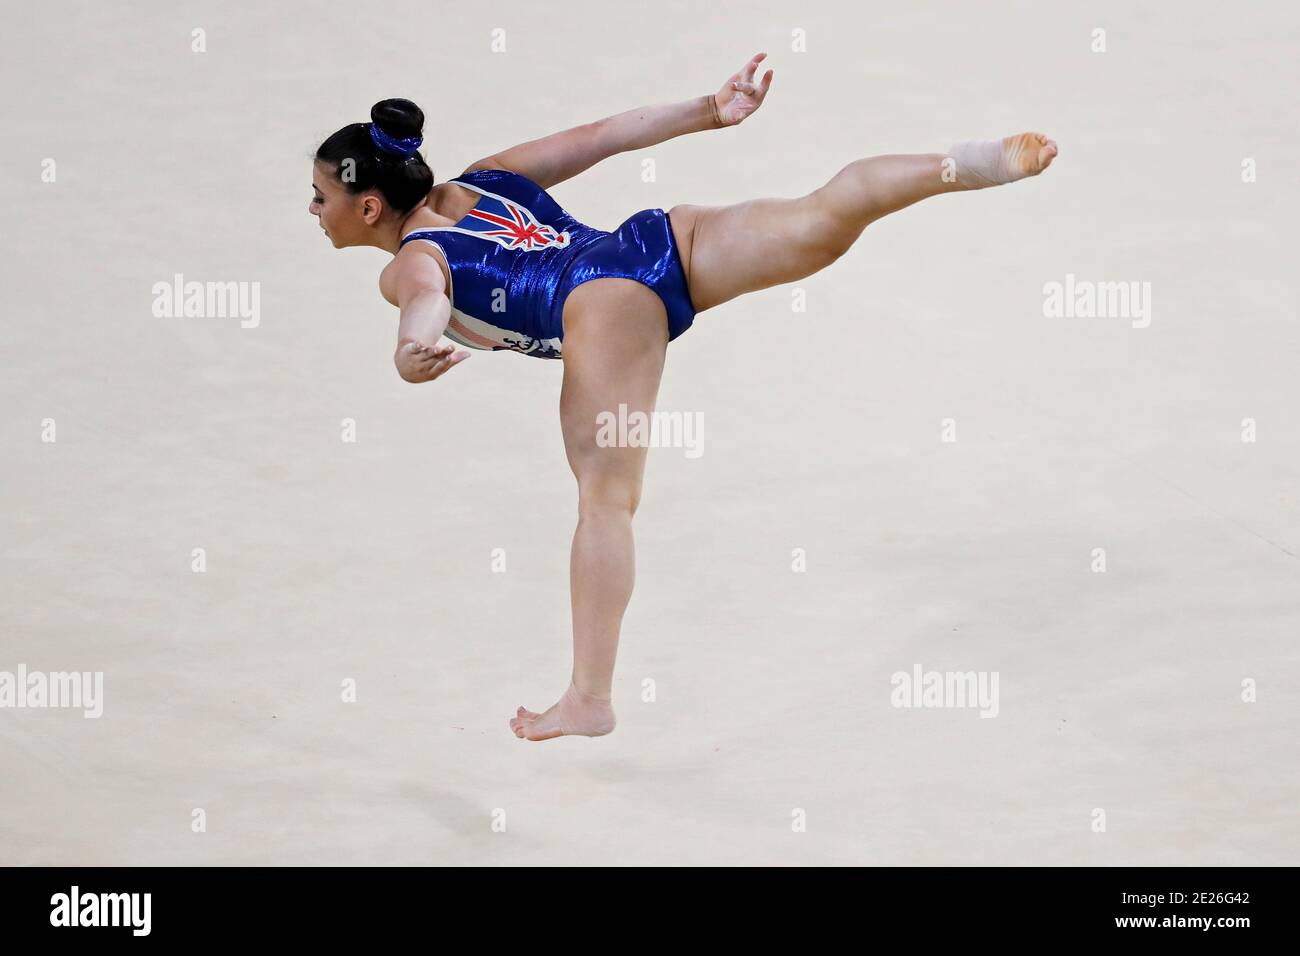 Claudia Fragapane à la gymnastique artistique des Jeux Olympiques d'été de Rio 2016. L'athlète de l'équipe de Grande-Bretagne effectue des exercices sur la surface de l'entraînement Banque D'Images